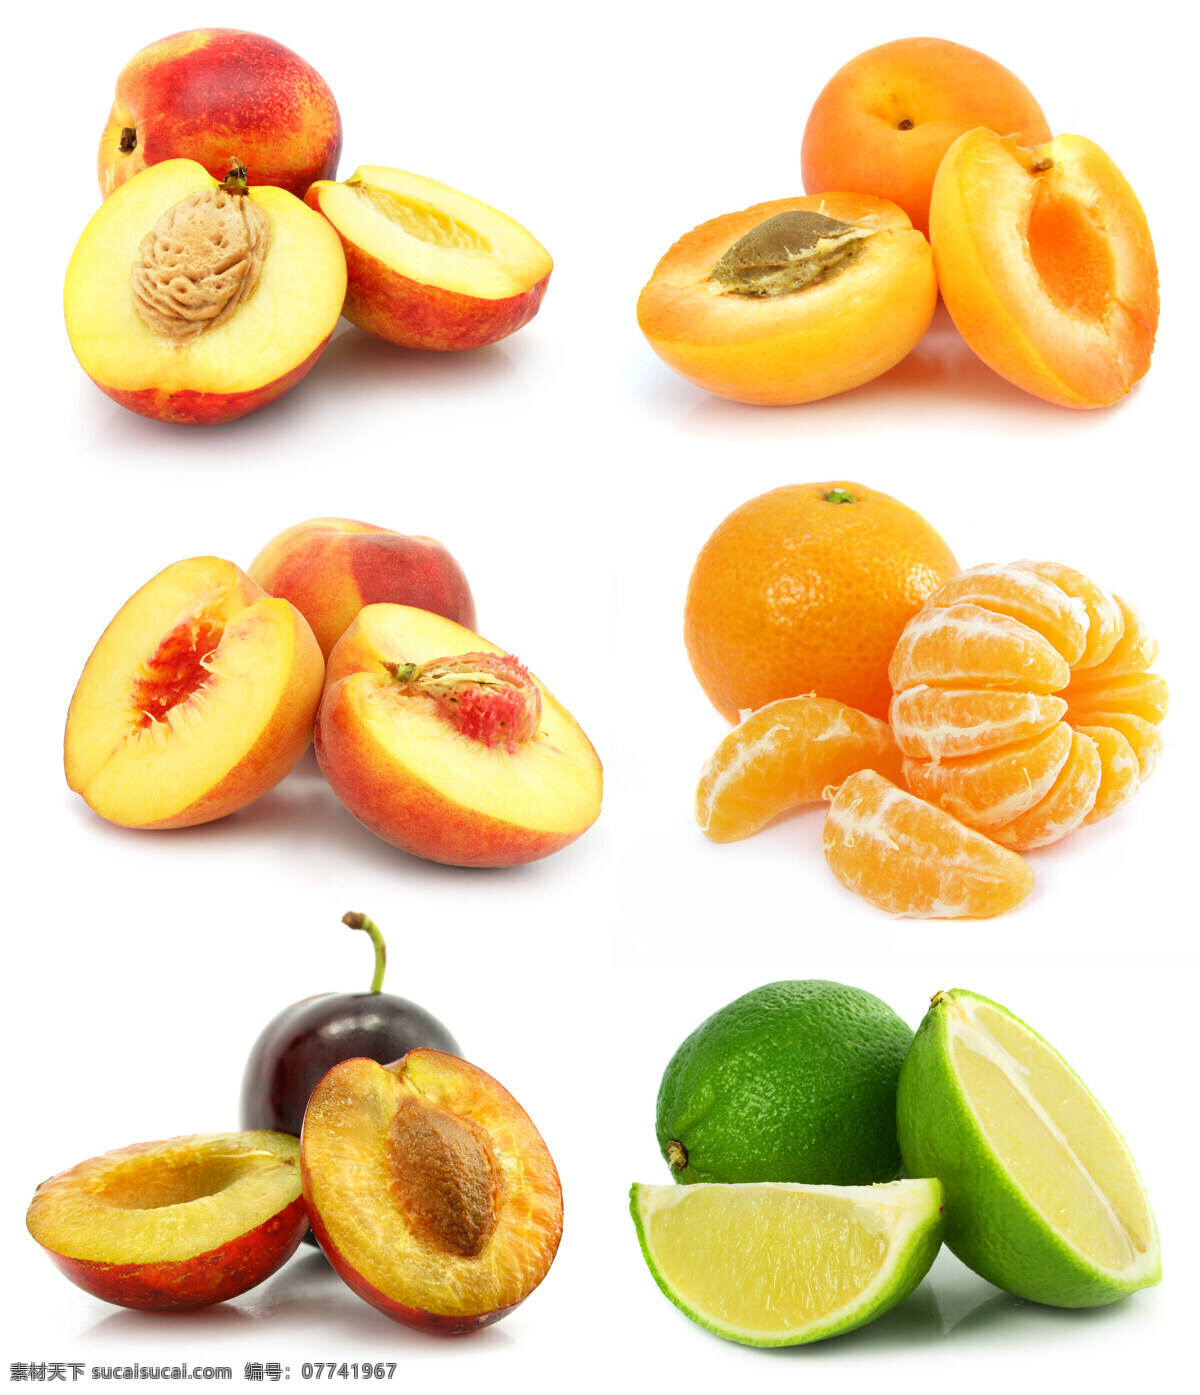 新鲜水果摄影 水果 新鲜水果 摄影图 桃 杏 橙 李子 桔子 果肉 水果切面 切开的水果 水果蔬菜 餐饮美食 白色